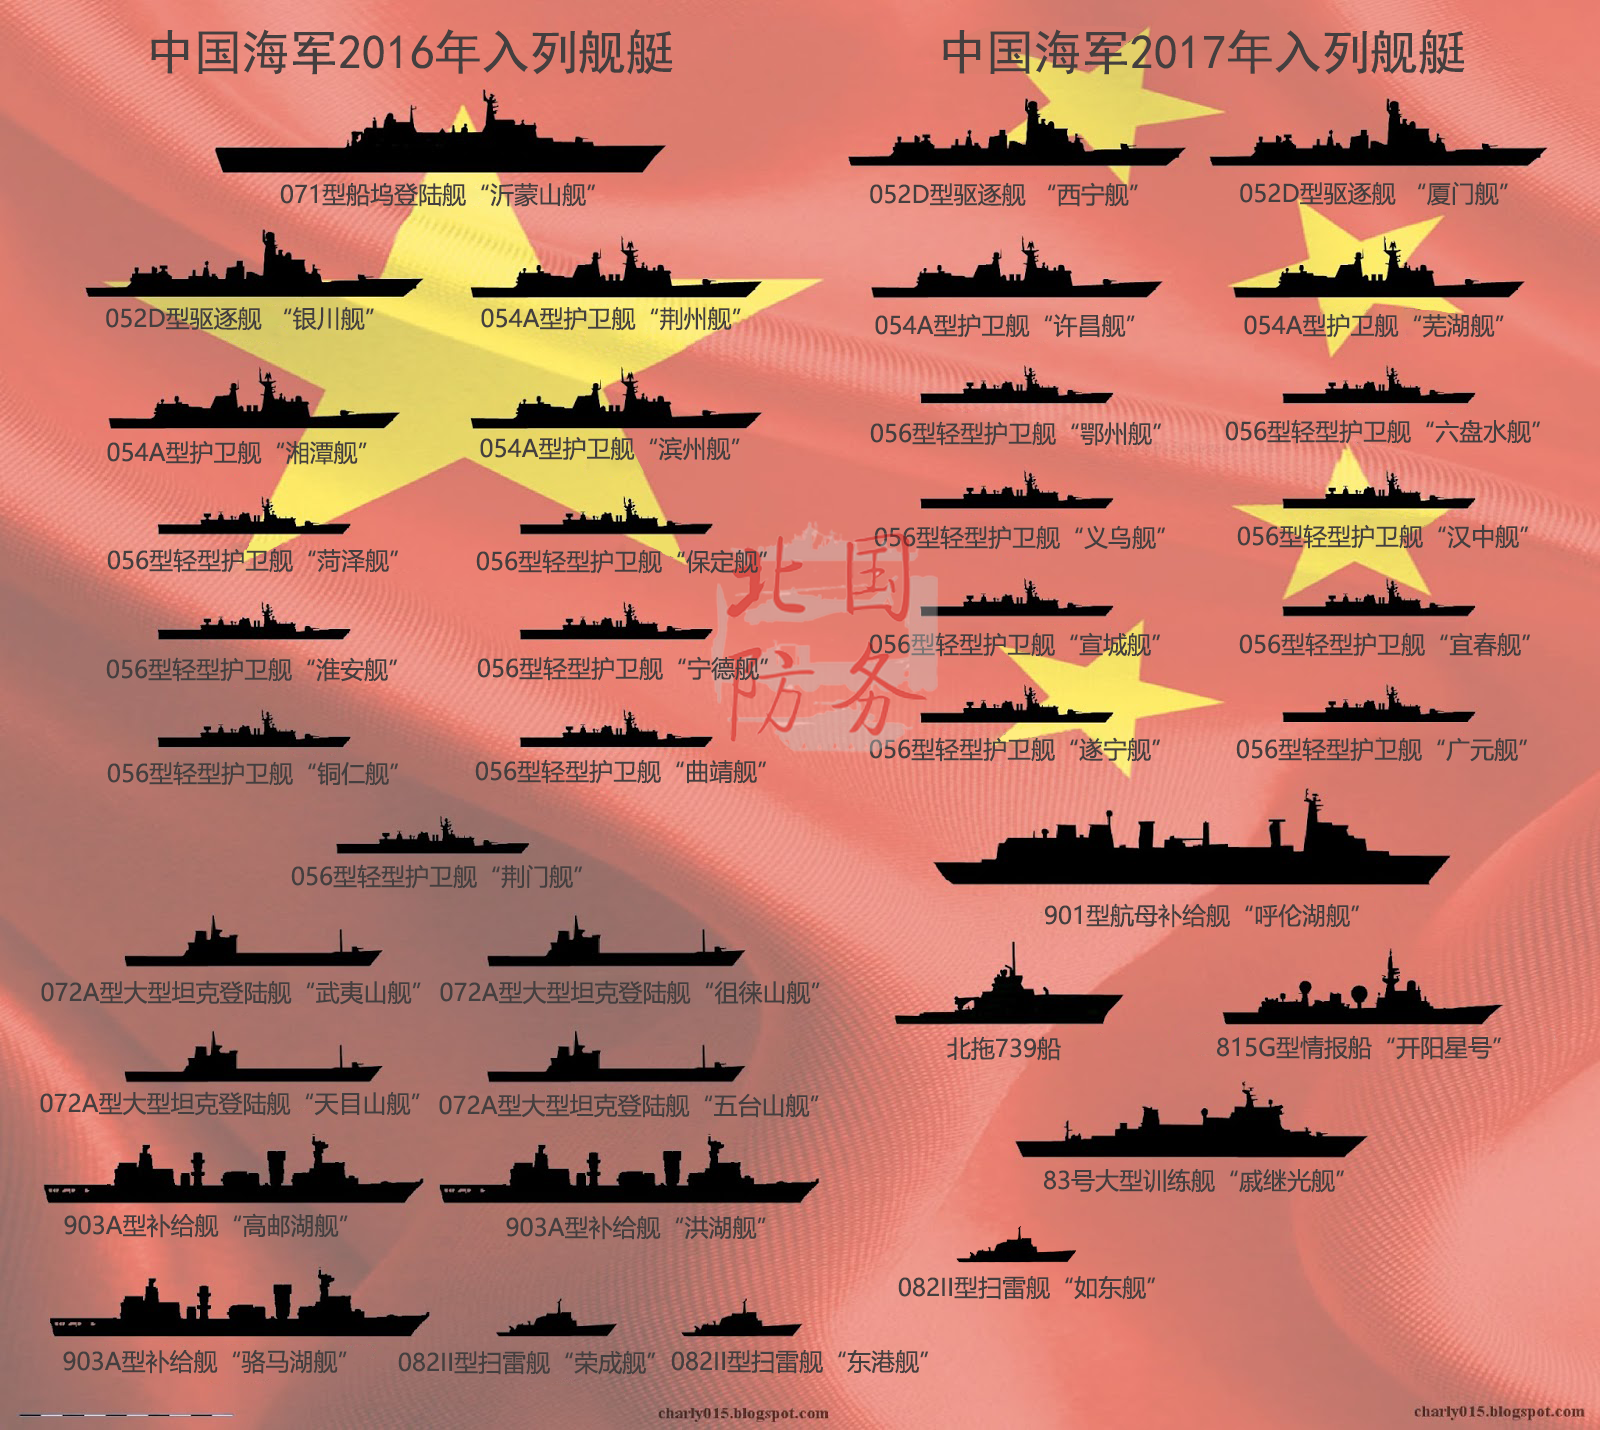 2张图看懂中美造舰谁更猛 中国数量碾压美国吨位更大